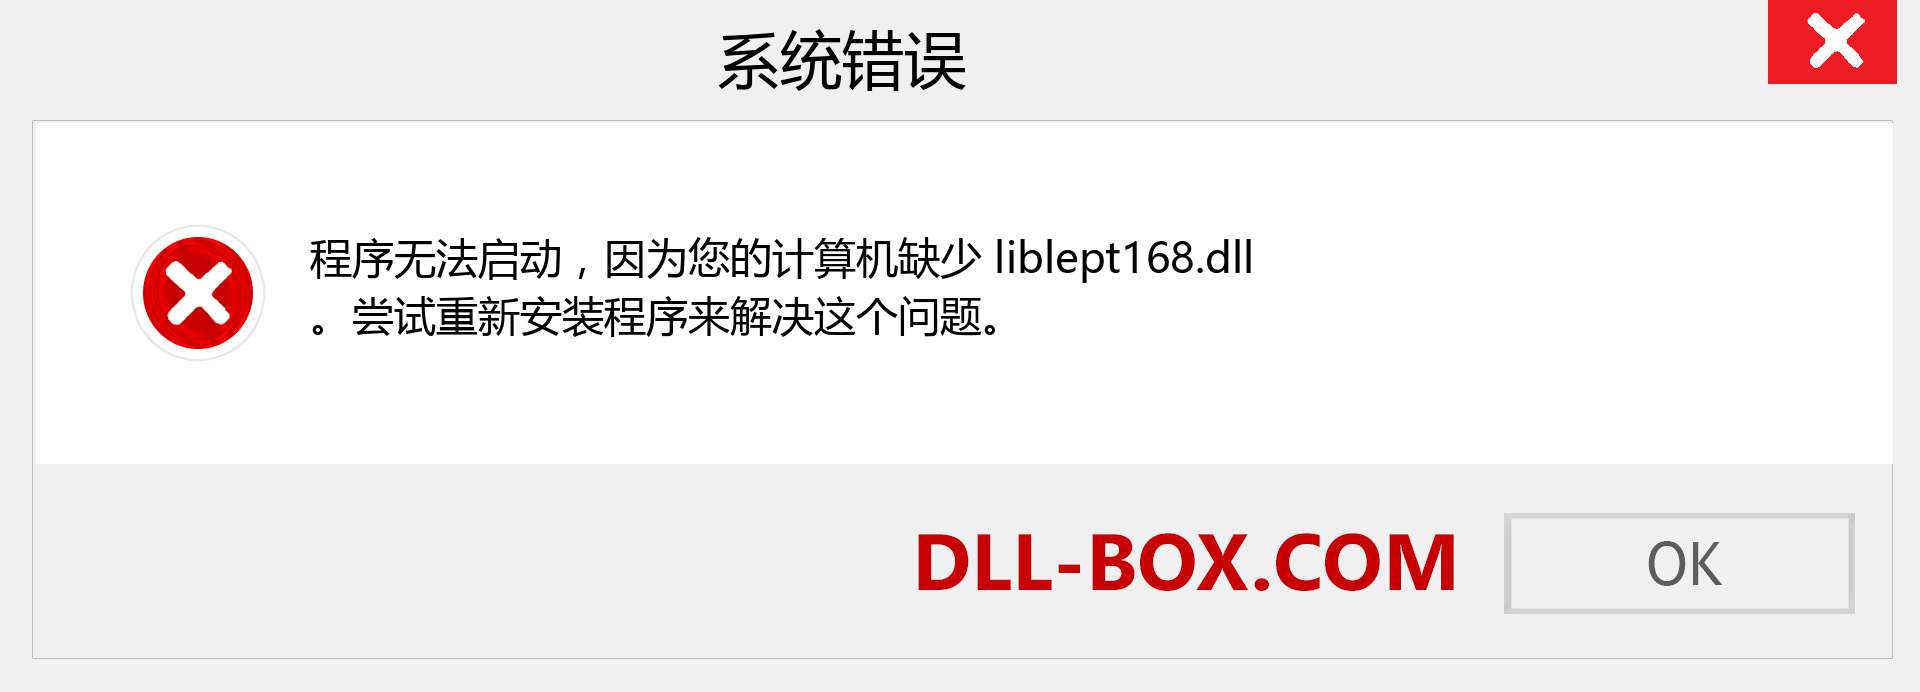 liblept168.dll 文件丢失？。 适用于 Windows 7、8、10 的下载 - 修复 Windows、照片、图像上的 liblept168 dll 丢失错误